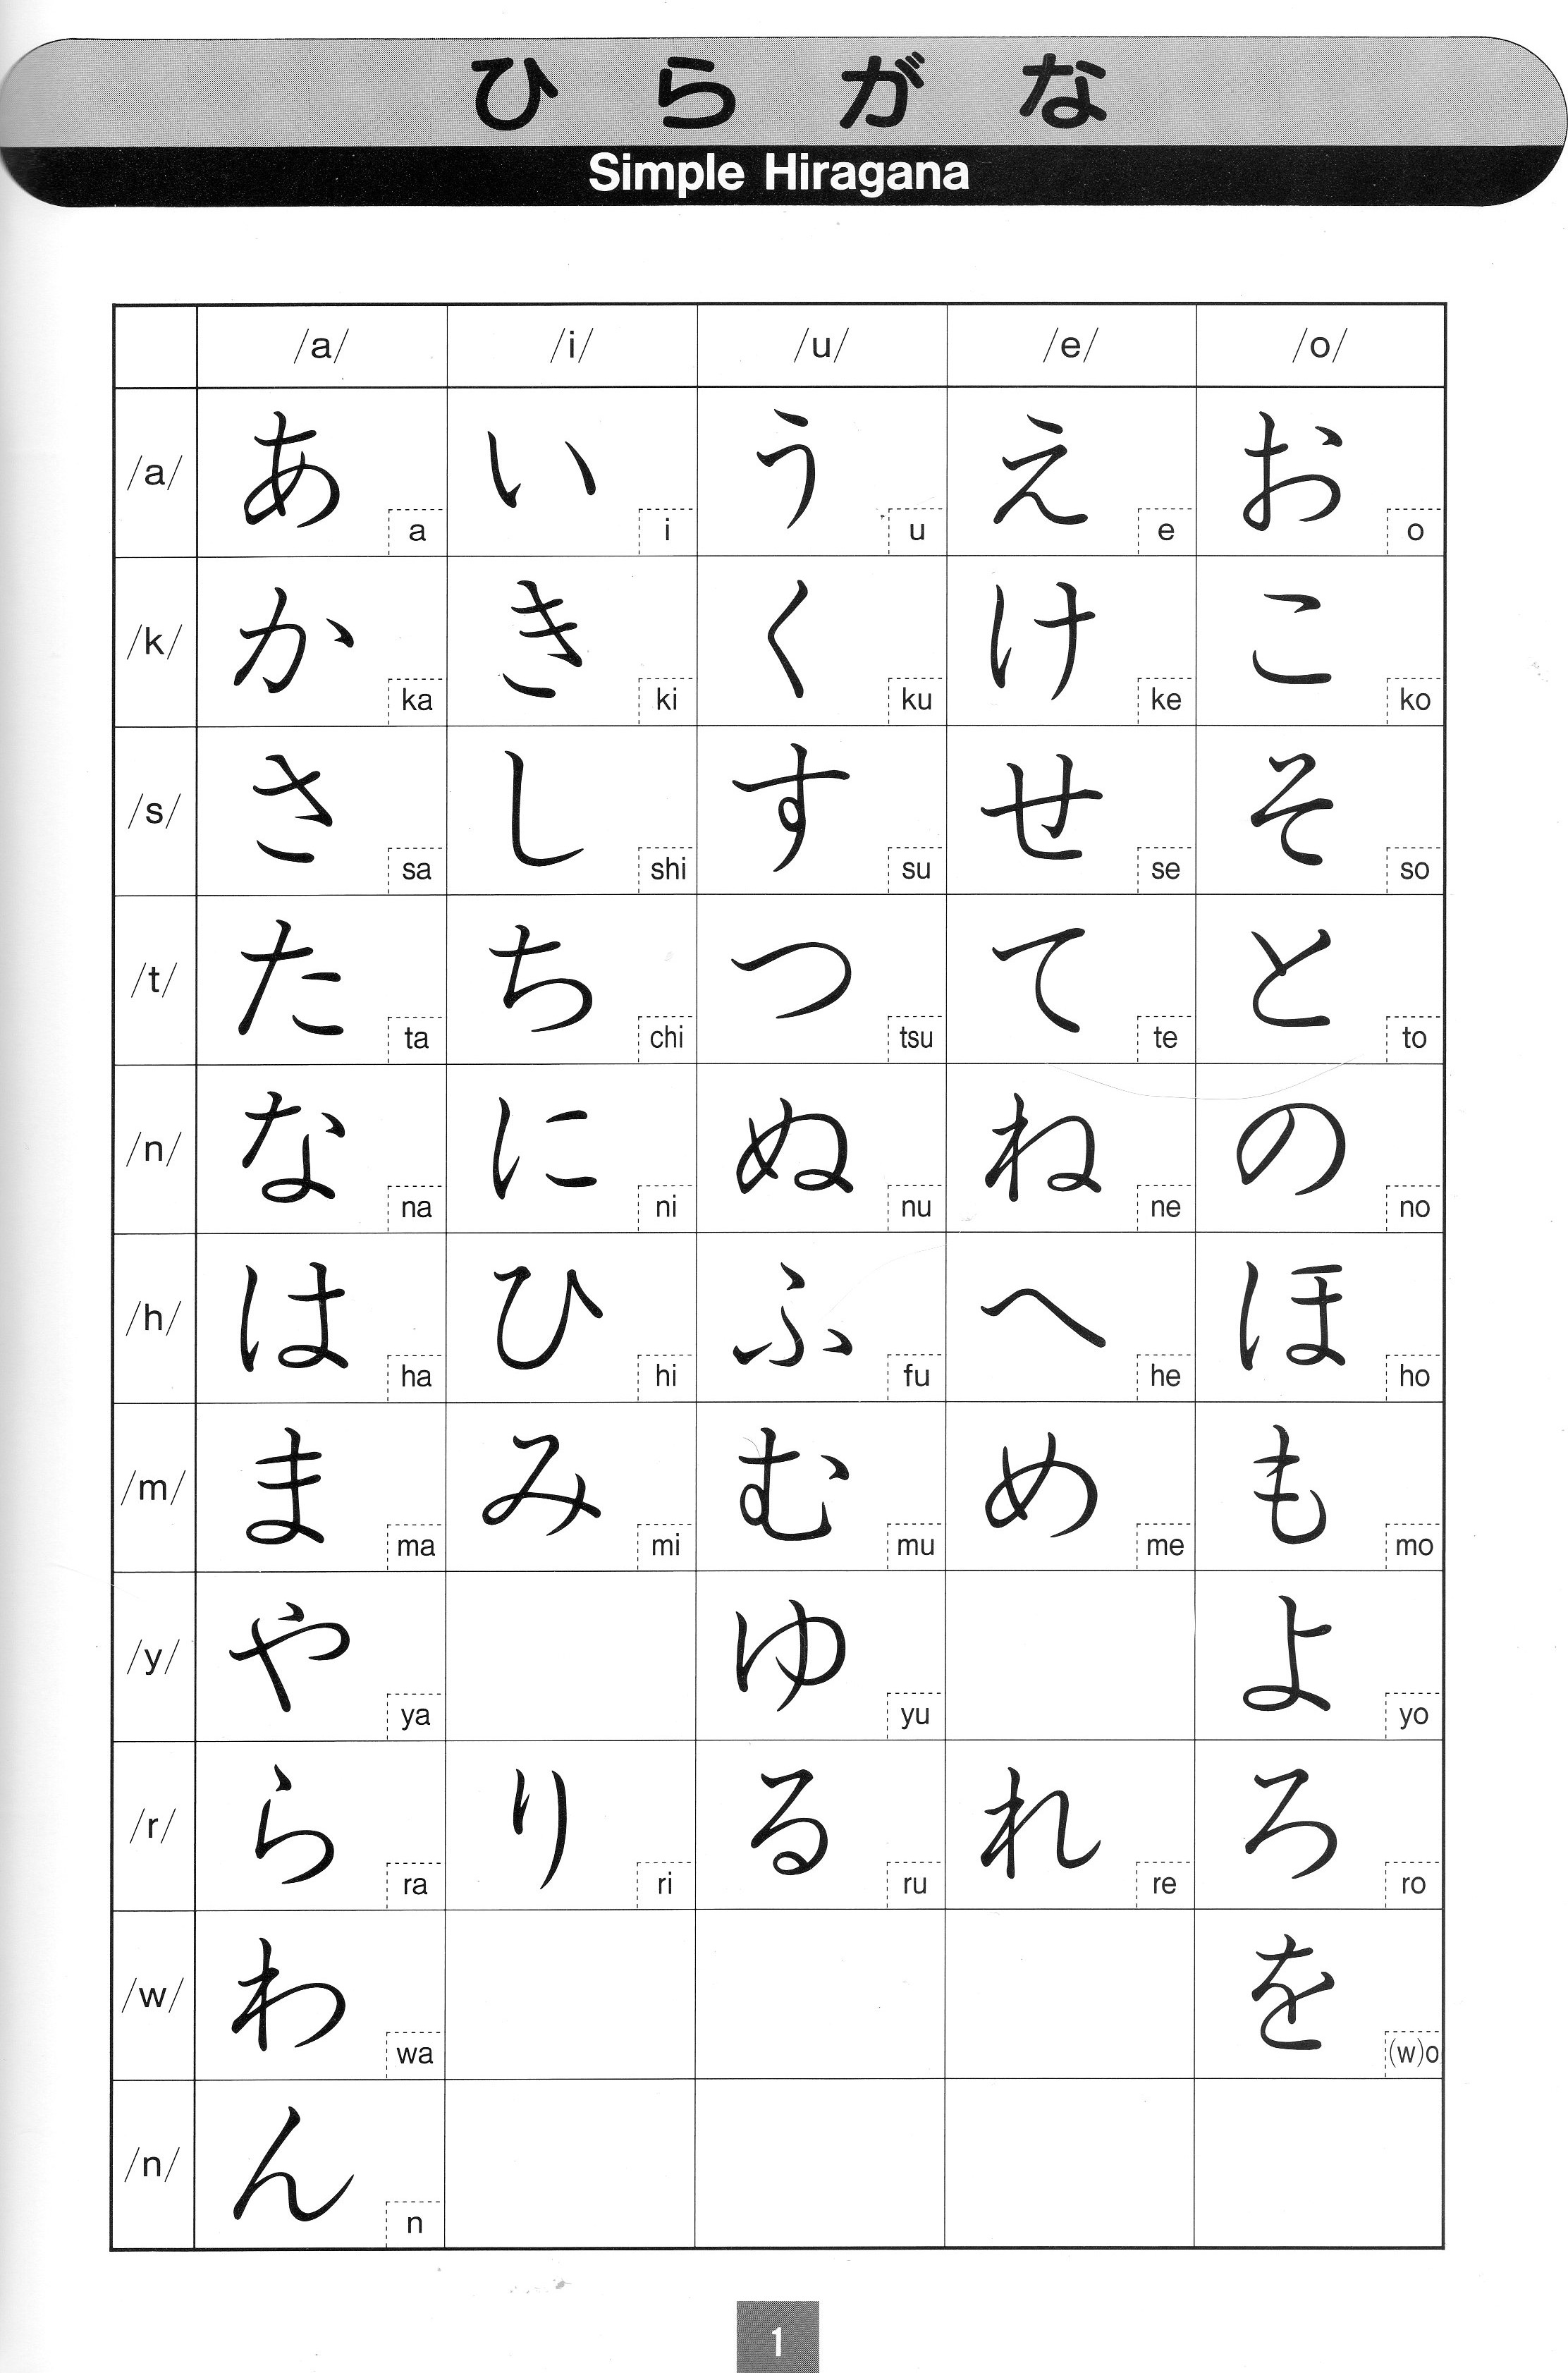 japanese word for homework